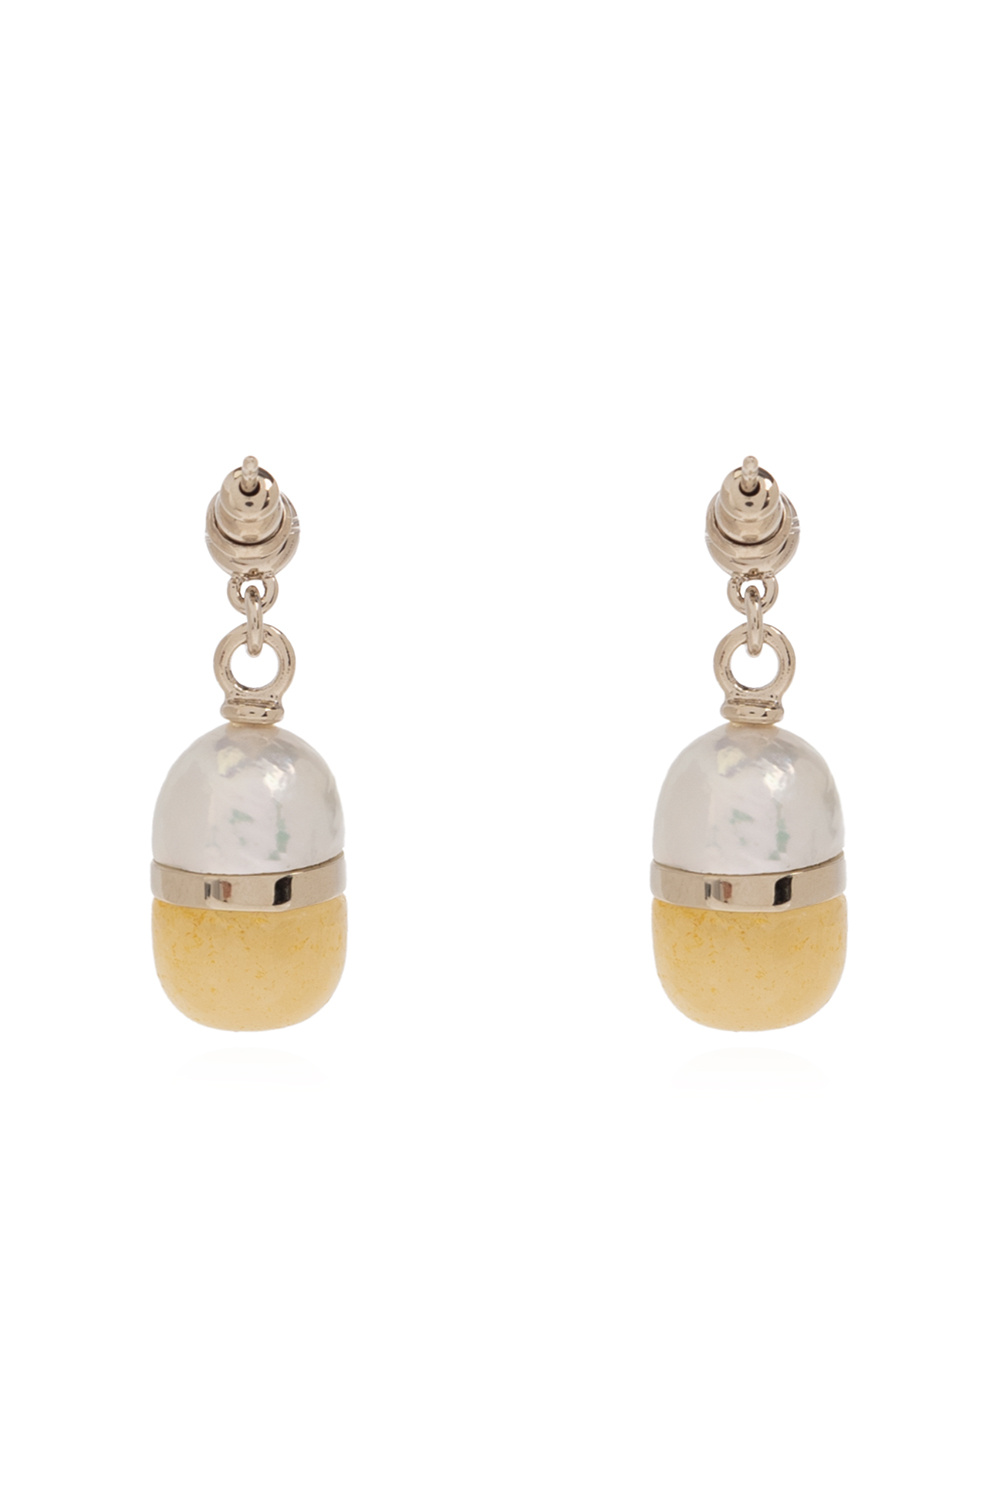 Chloé ‘Darcey’ earrings